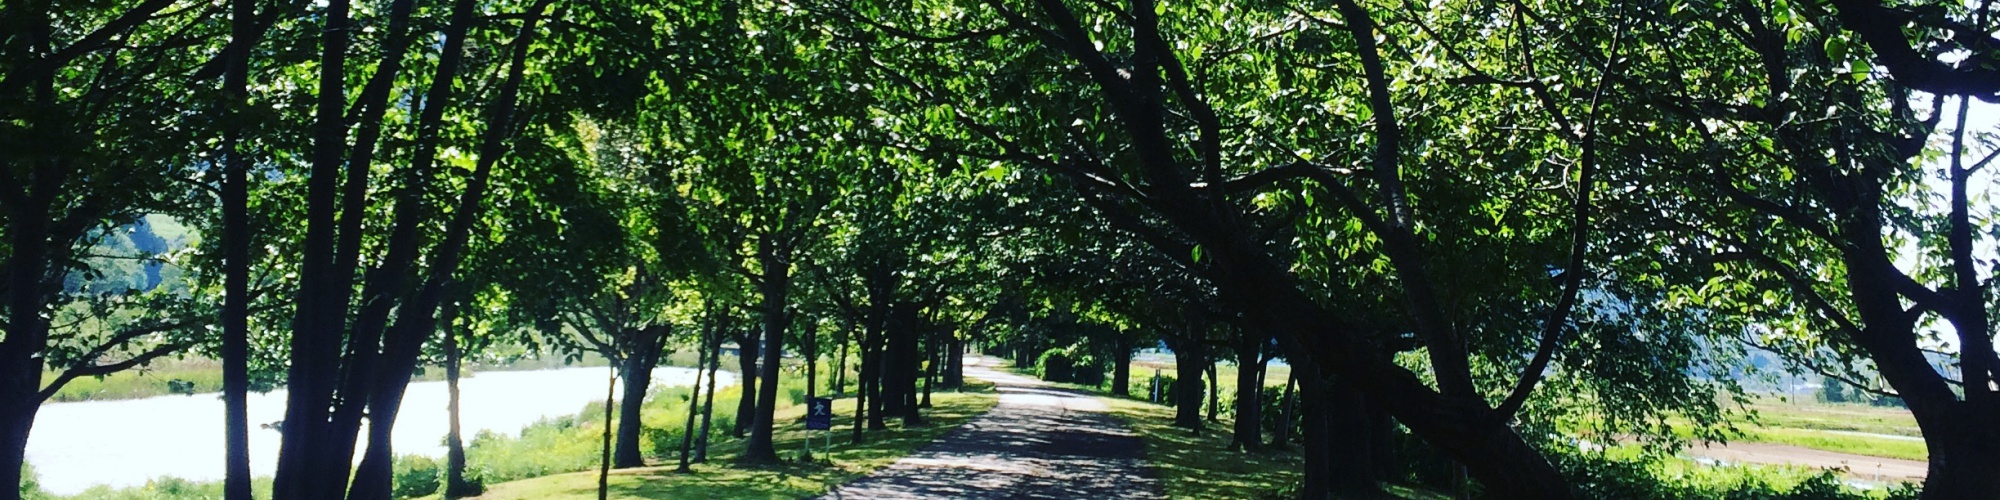 公園の外周の歩道は鮮やかな緑の木々で囲まれています。